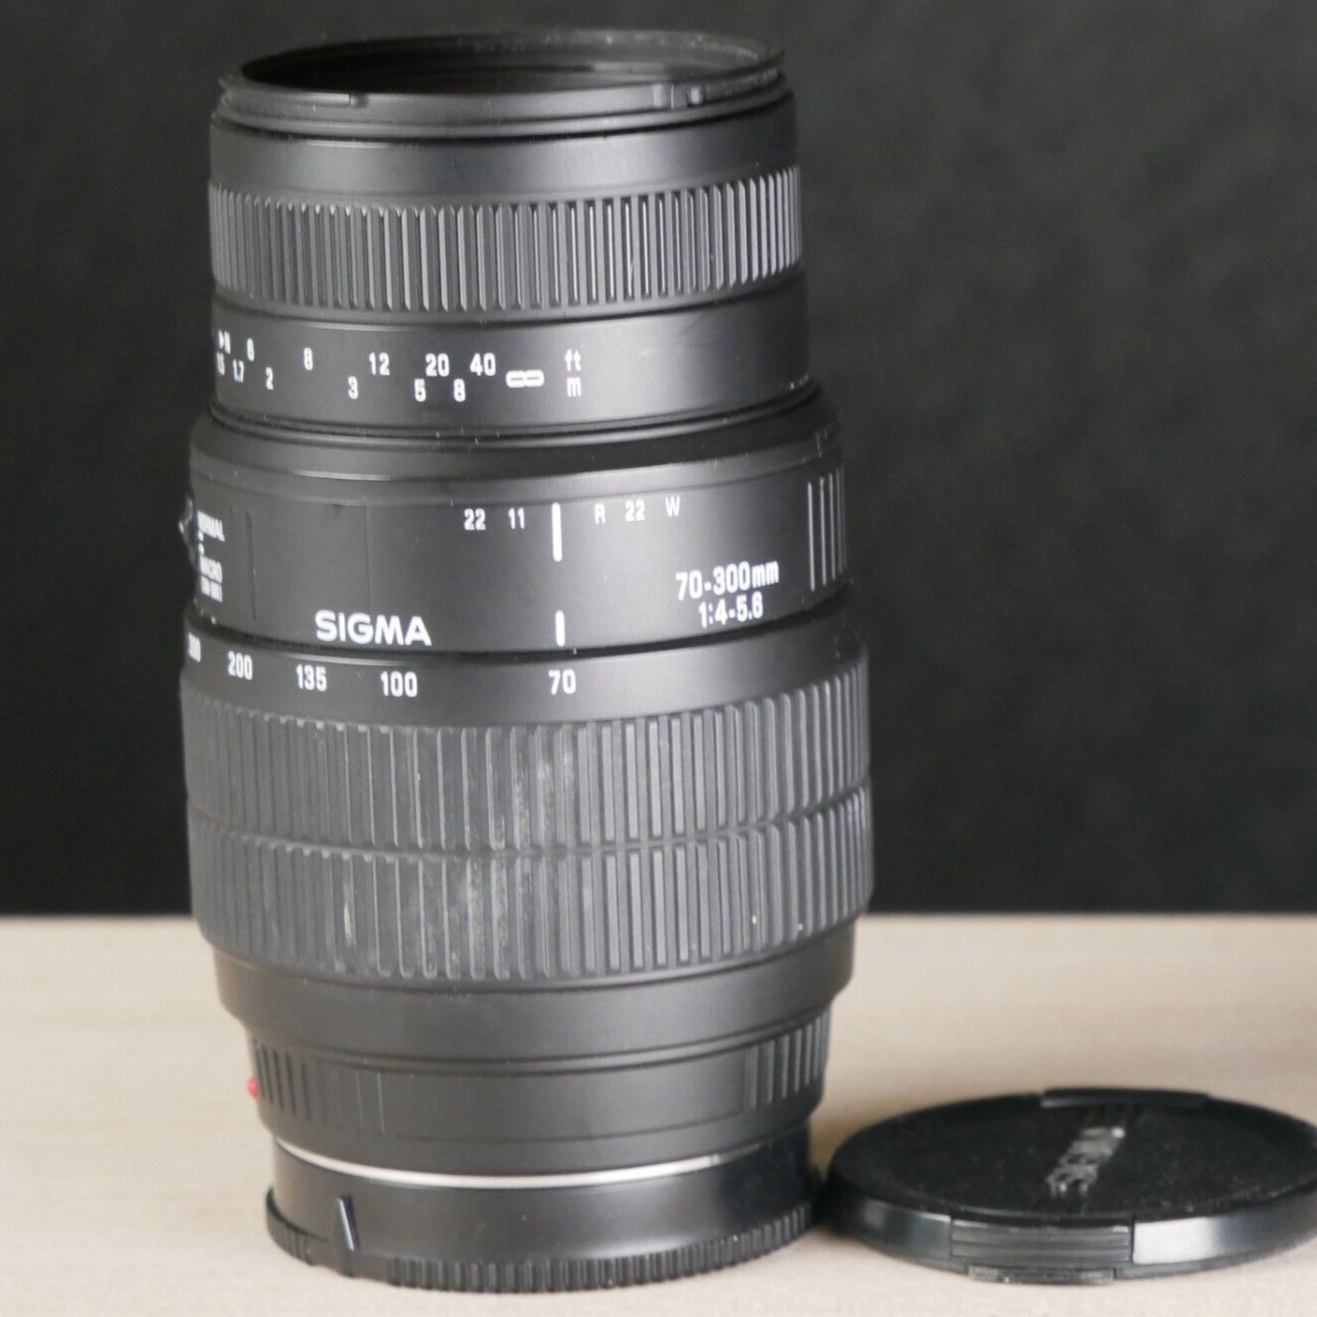 Sigma 70-300MM 1:4-5.6 AF Lens for Sony A Mount DSLR Camera *TESTED* - $44.50